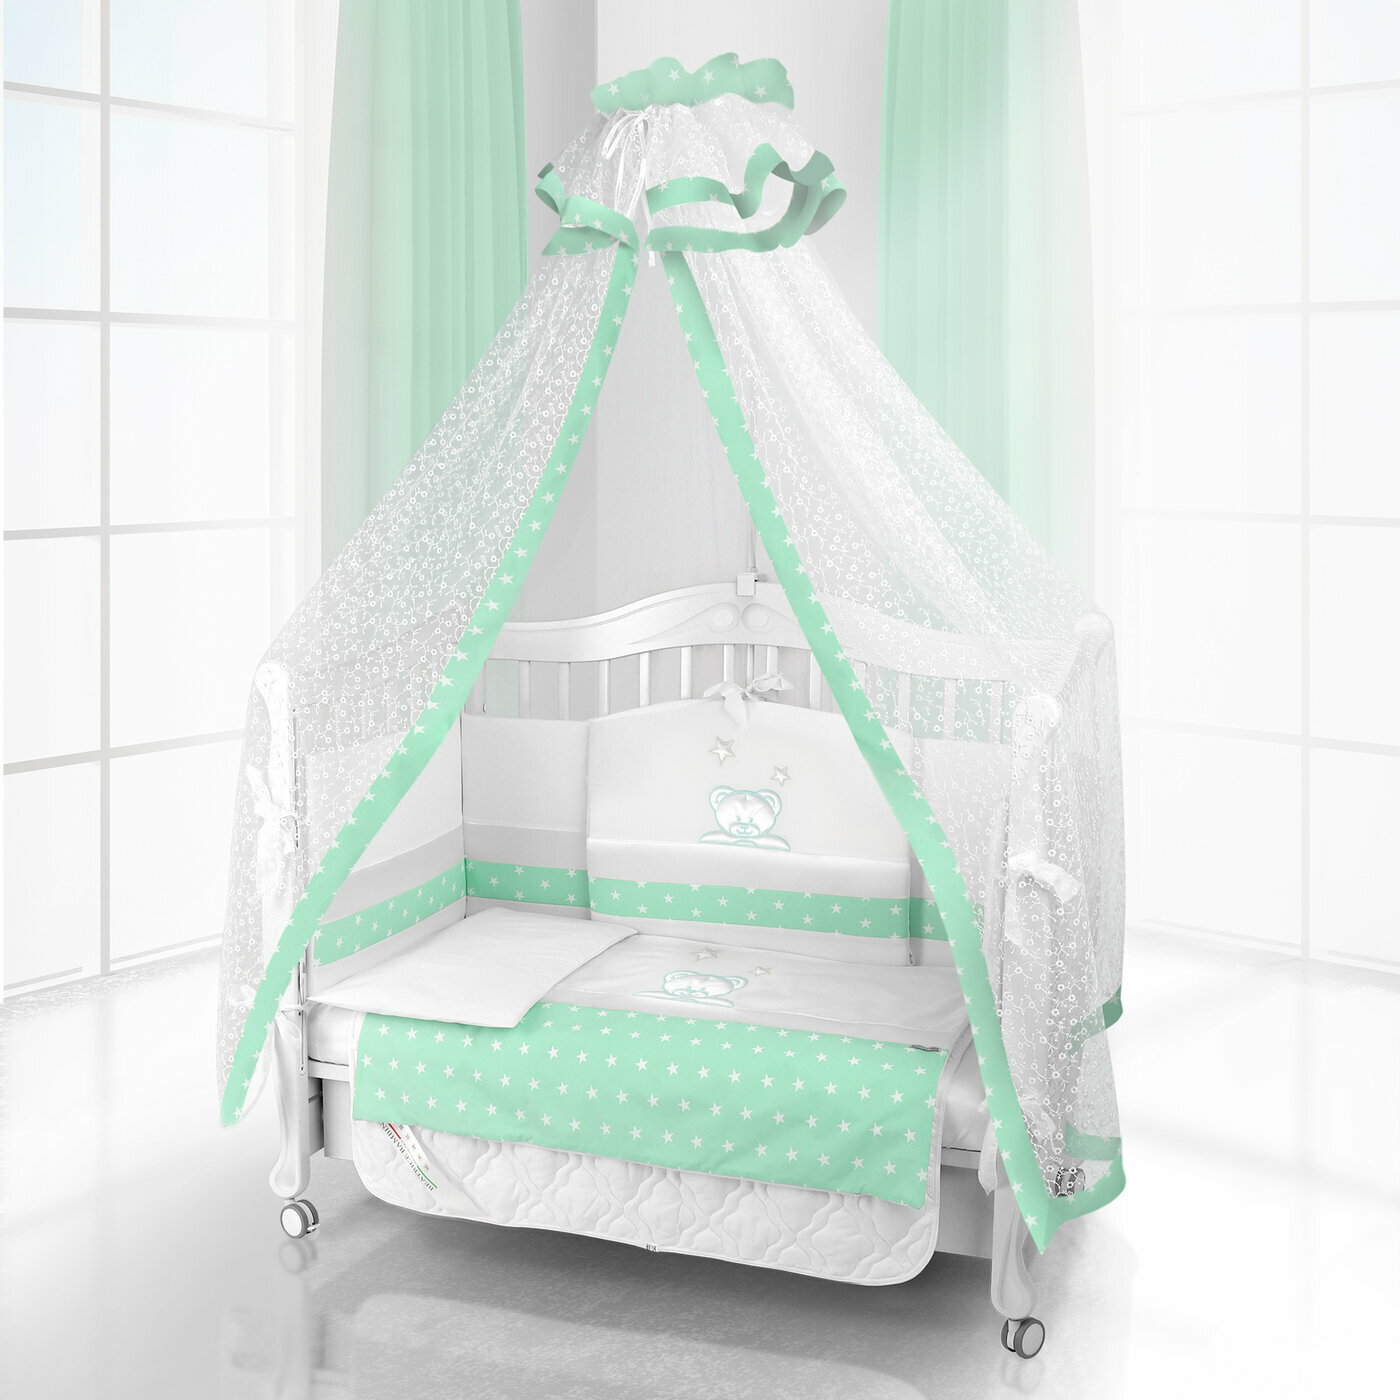 Комплект постельного белья Beatrice Bambini Unico Capolino (120х60) - bianco& verde